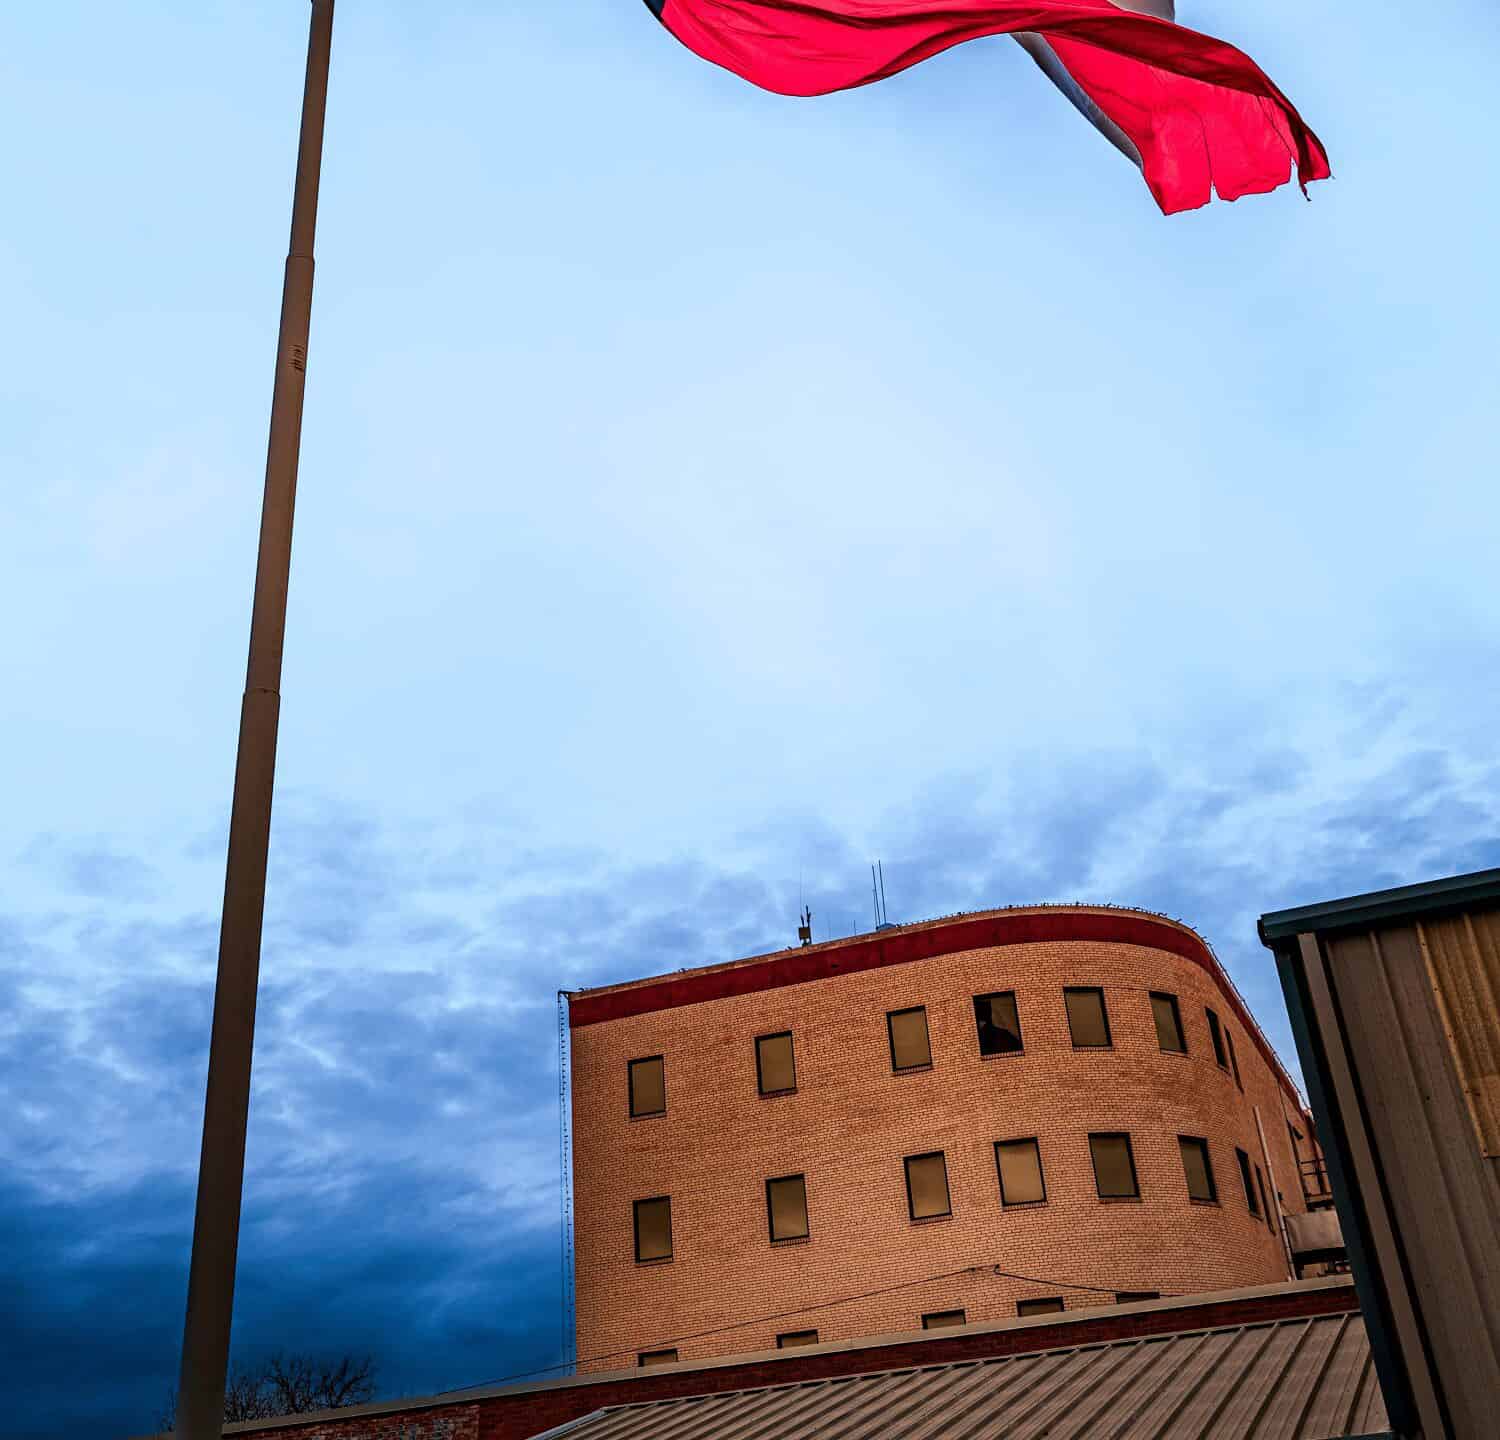 Lone Star Texas State Flag sventola nel vento su Odessa in Texas, Stati Uniti d'America, drammatico cloudscape